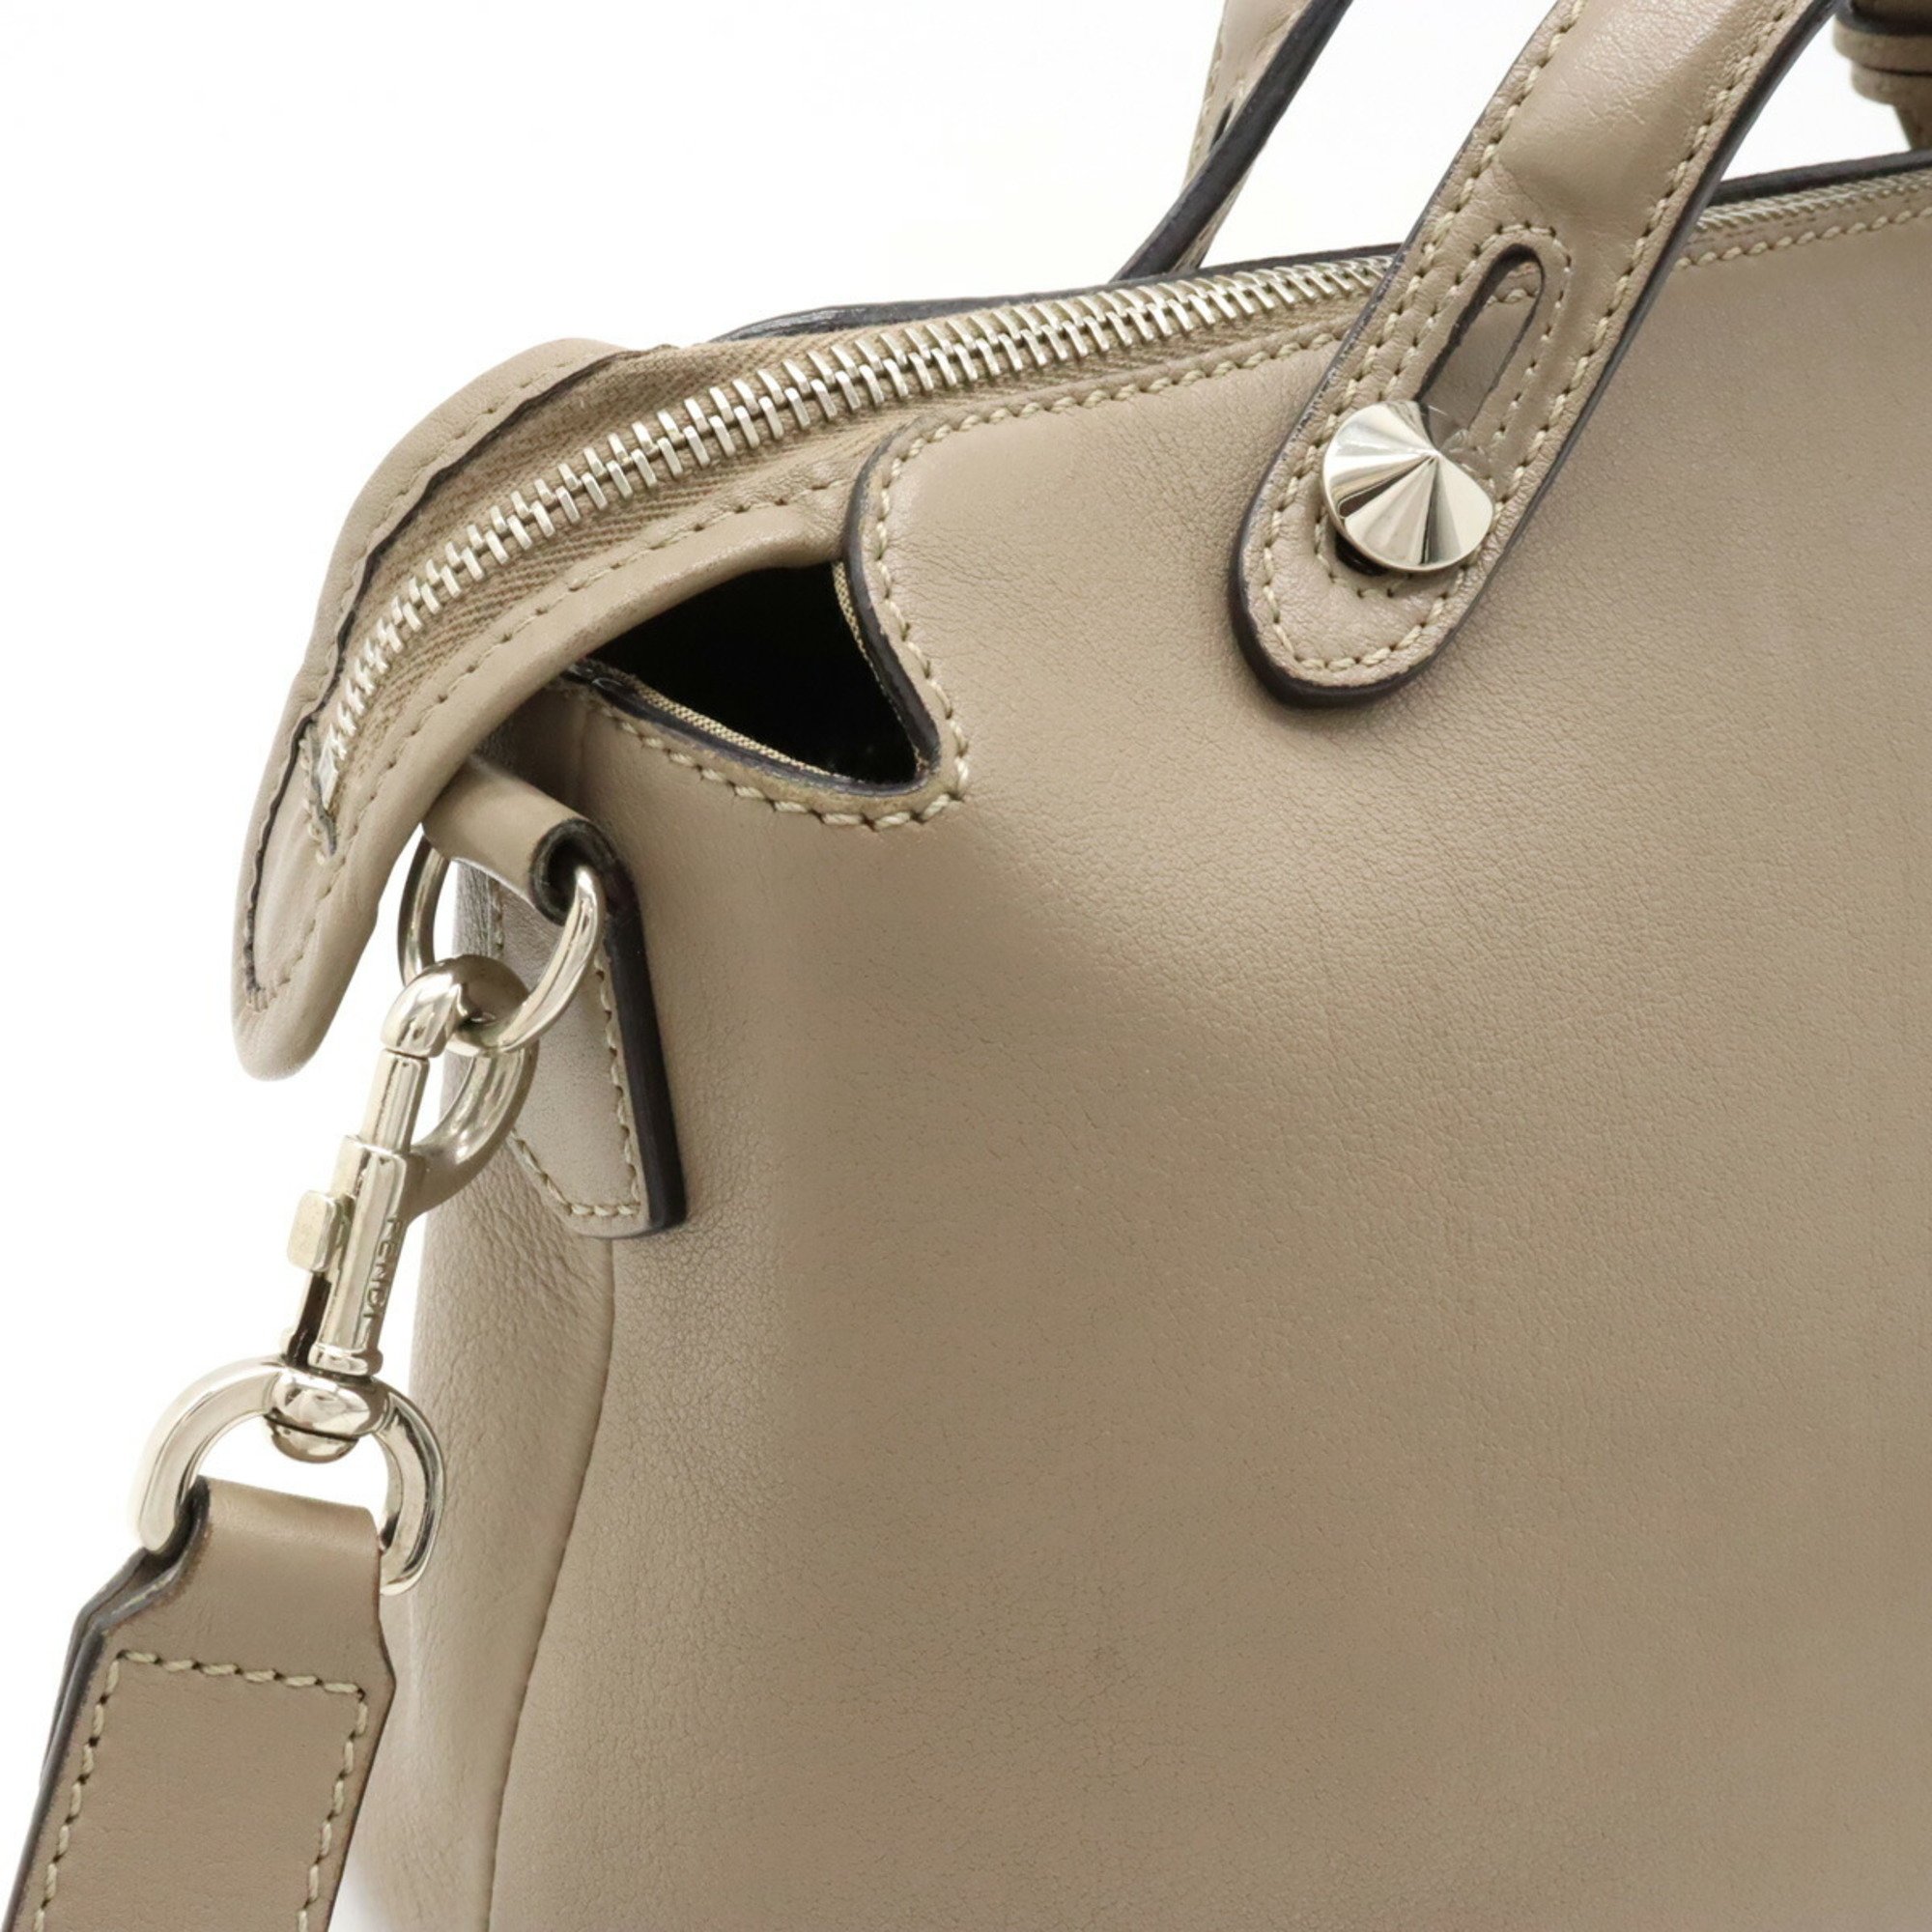 FENDI BY THE WAY Medium Handbag Shoulder Bag Leather Greige 8BL124